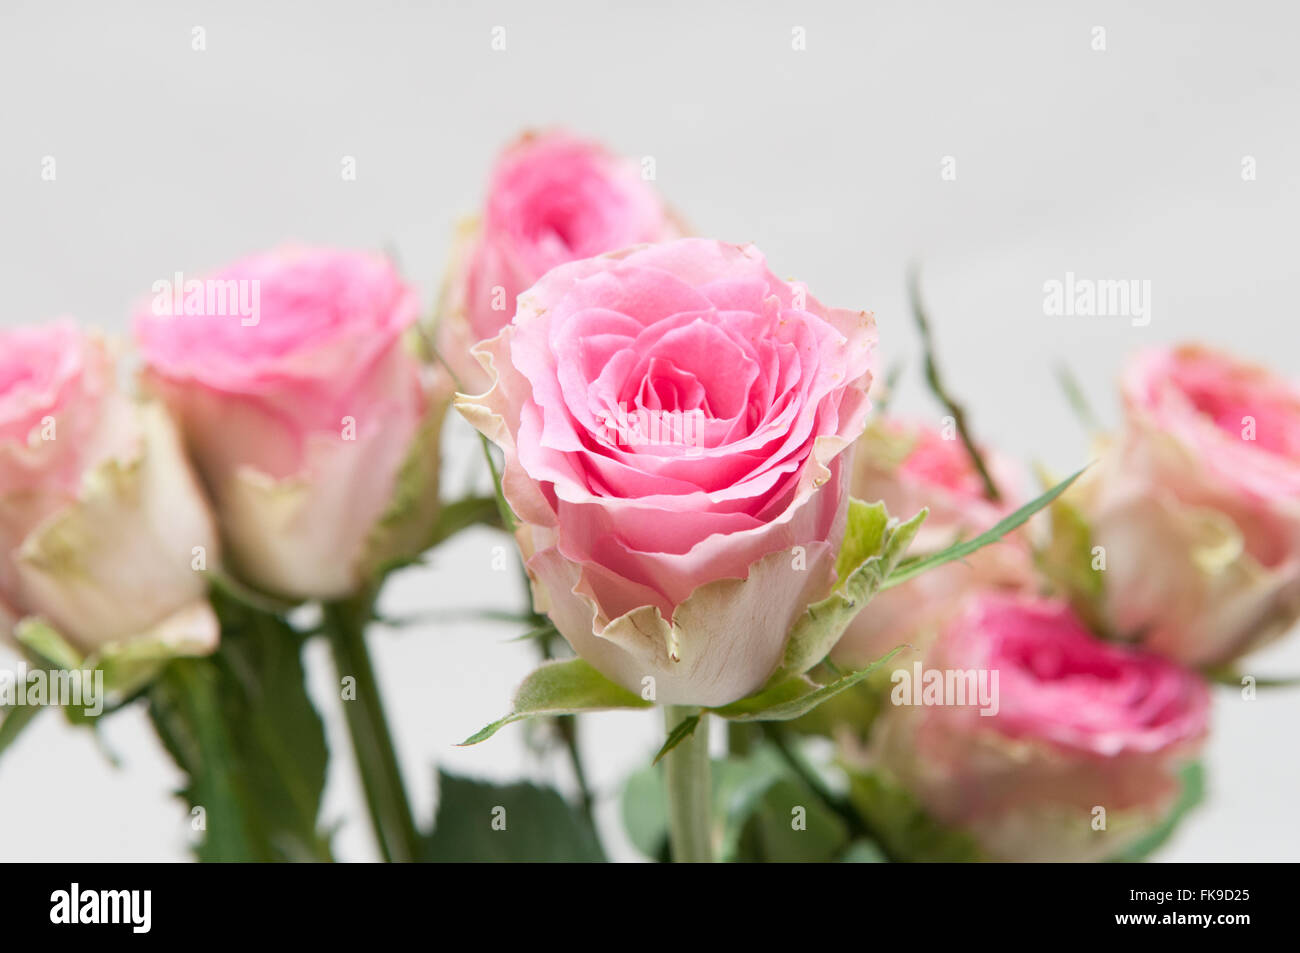 La disposizione delle rose rosa con petali di apertura su uno sfondo bianco Foto Stock